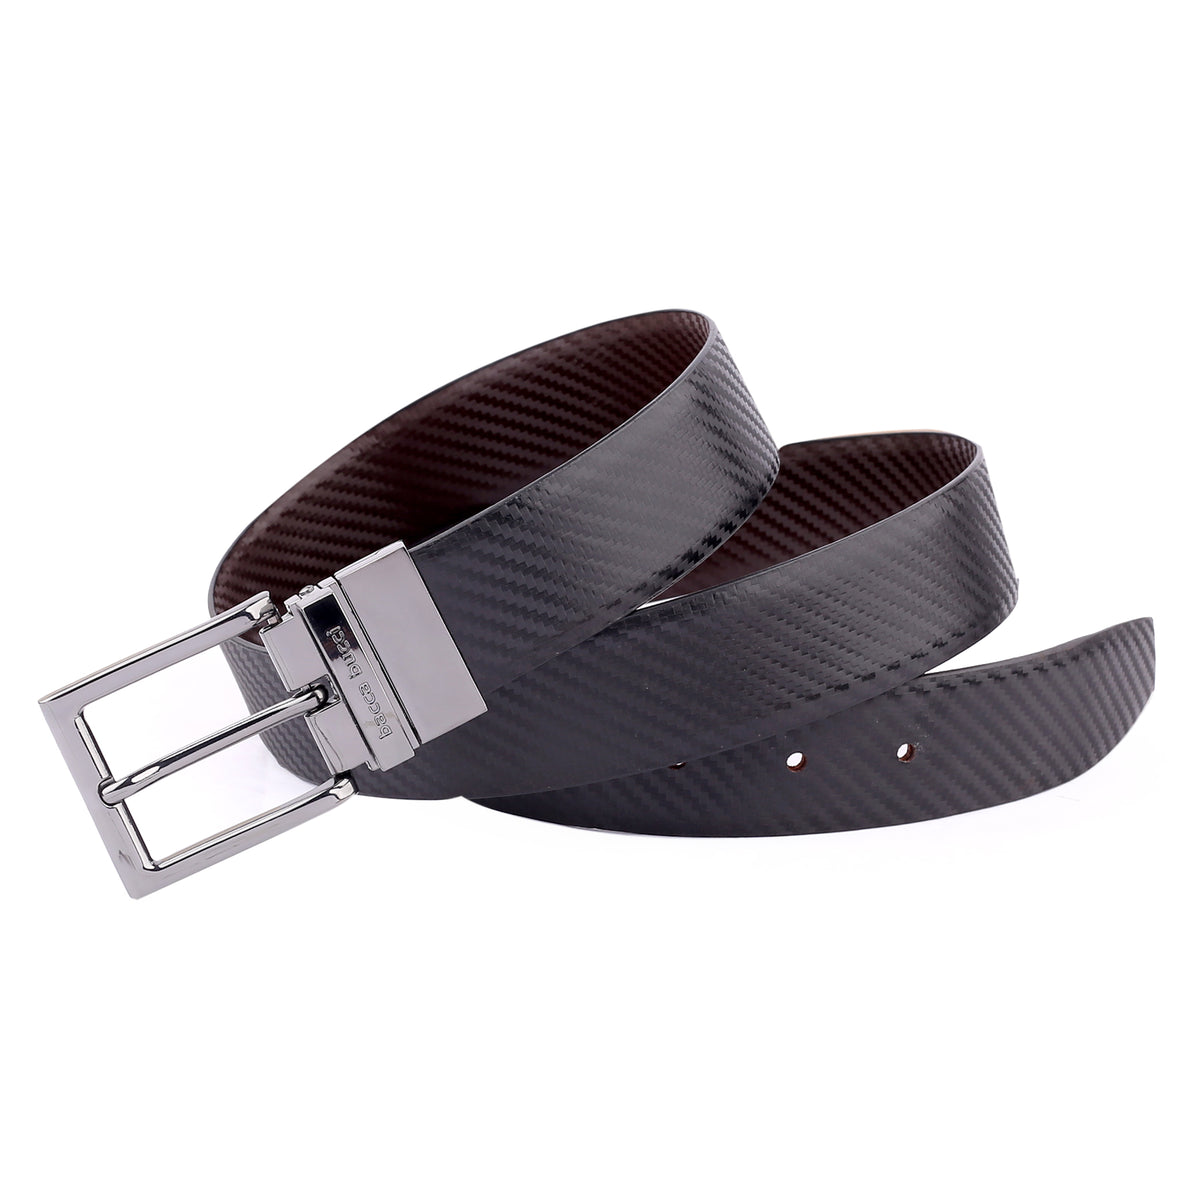 SHOP MEN BELTS- Original Leather Belt, Best Belt Brand